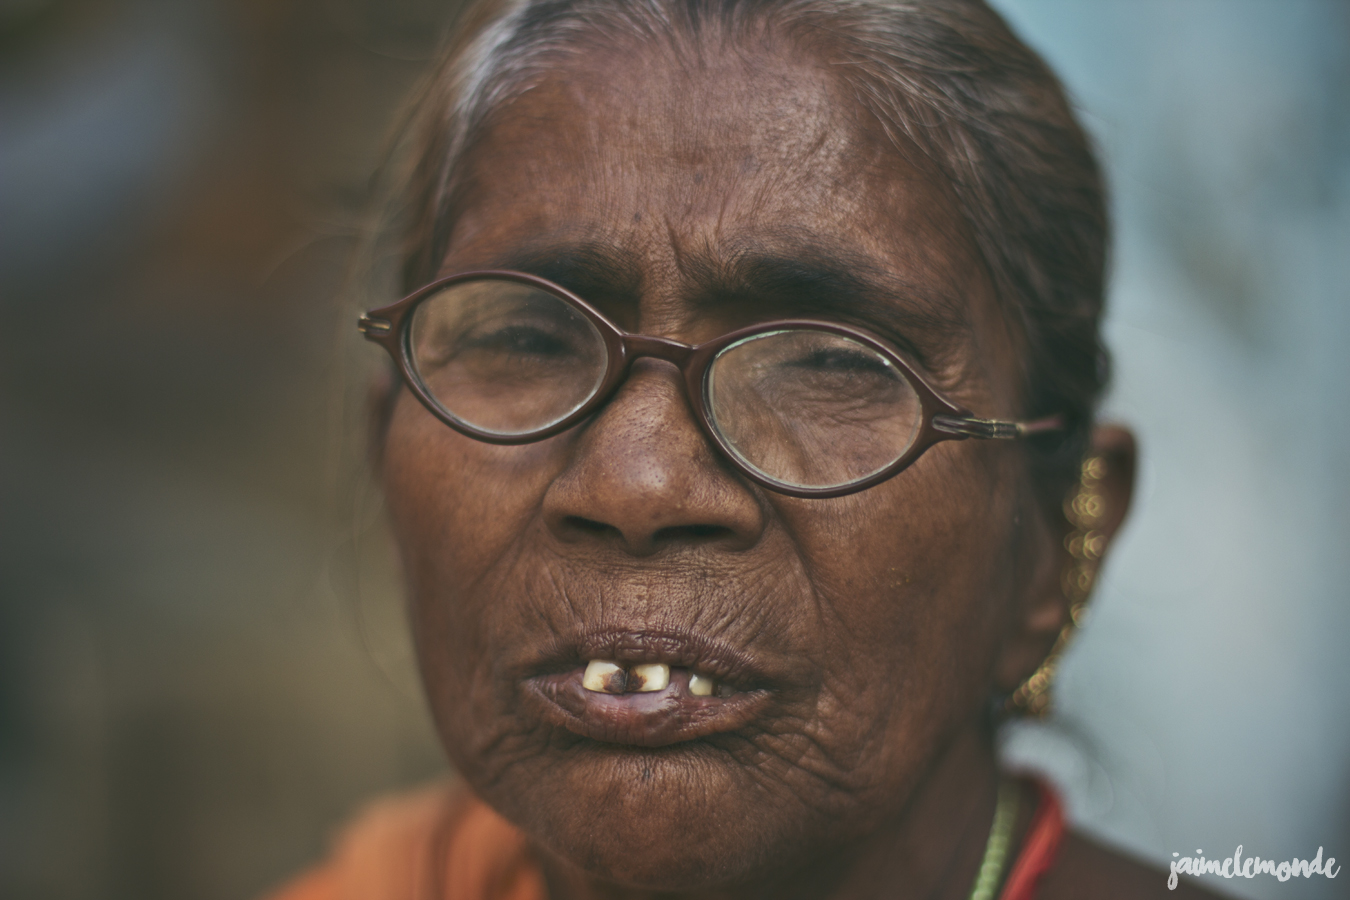 blog voyage - 33 portraits en Inde - ©jaimelemonde (29)